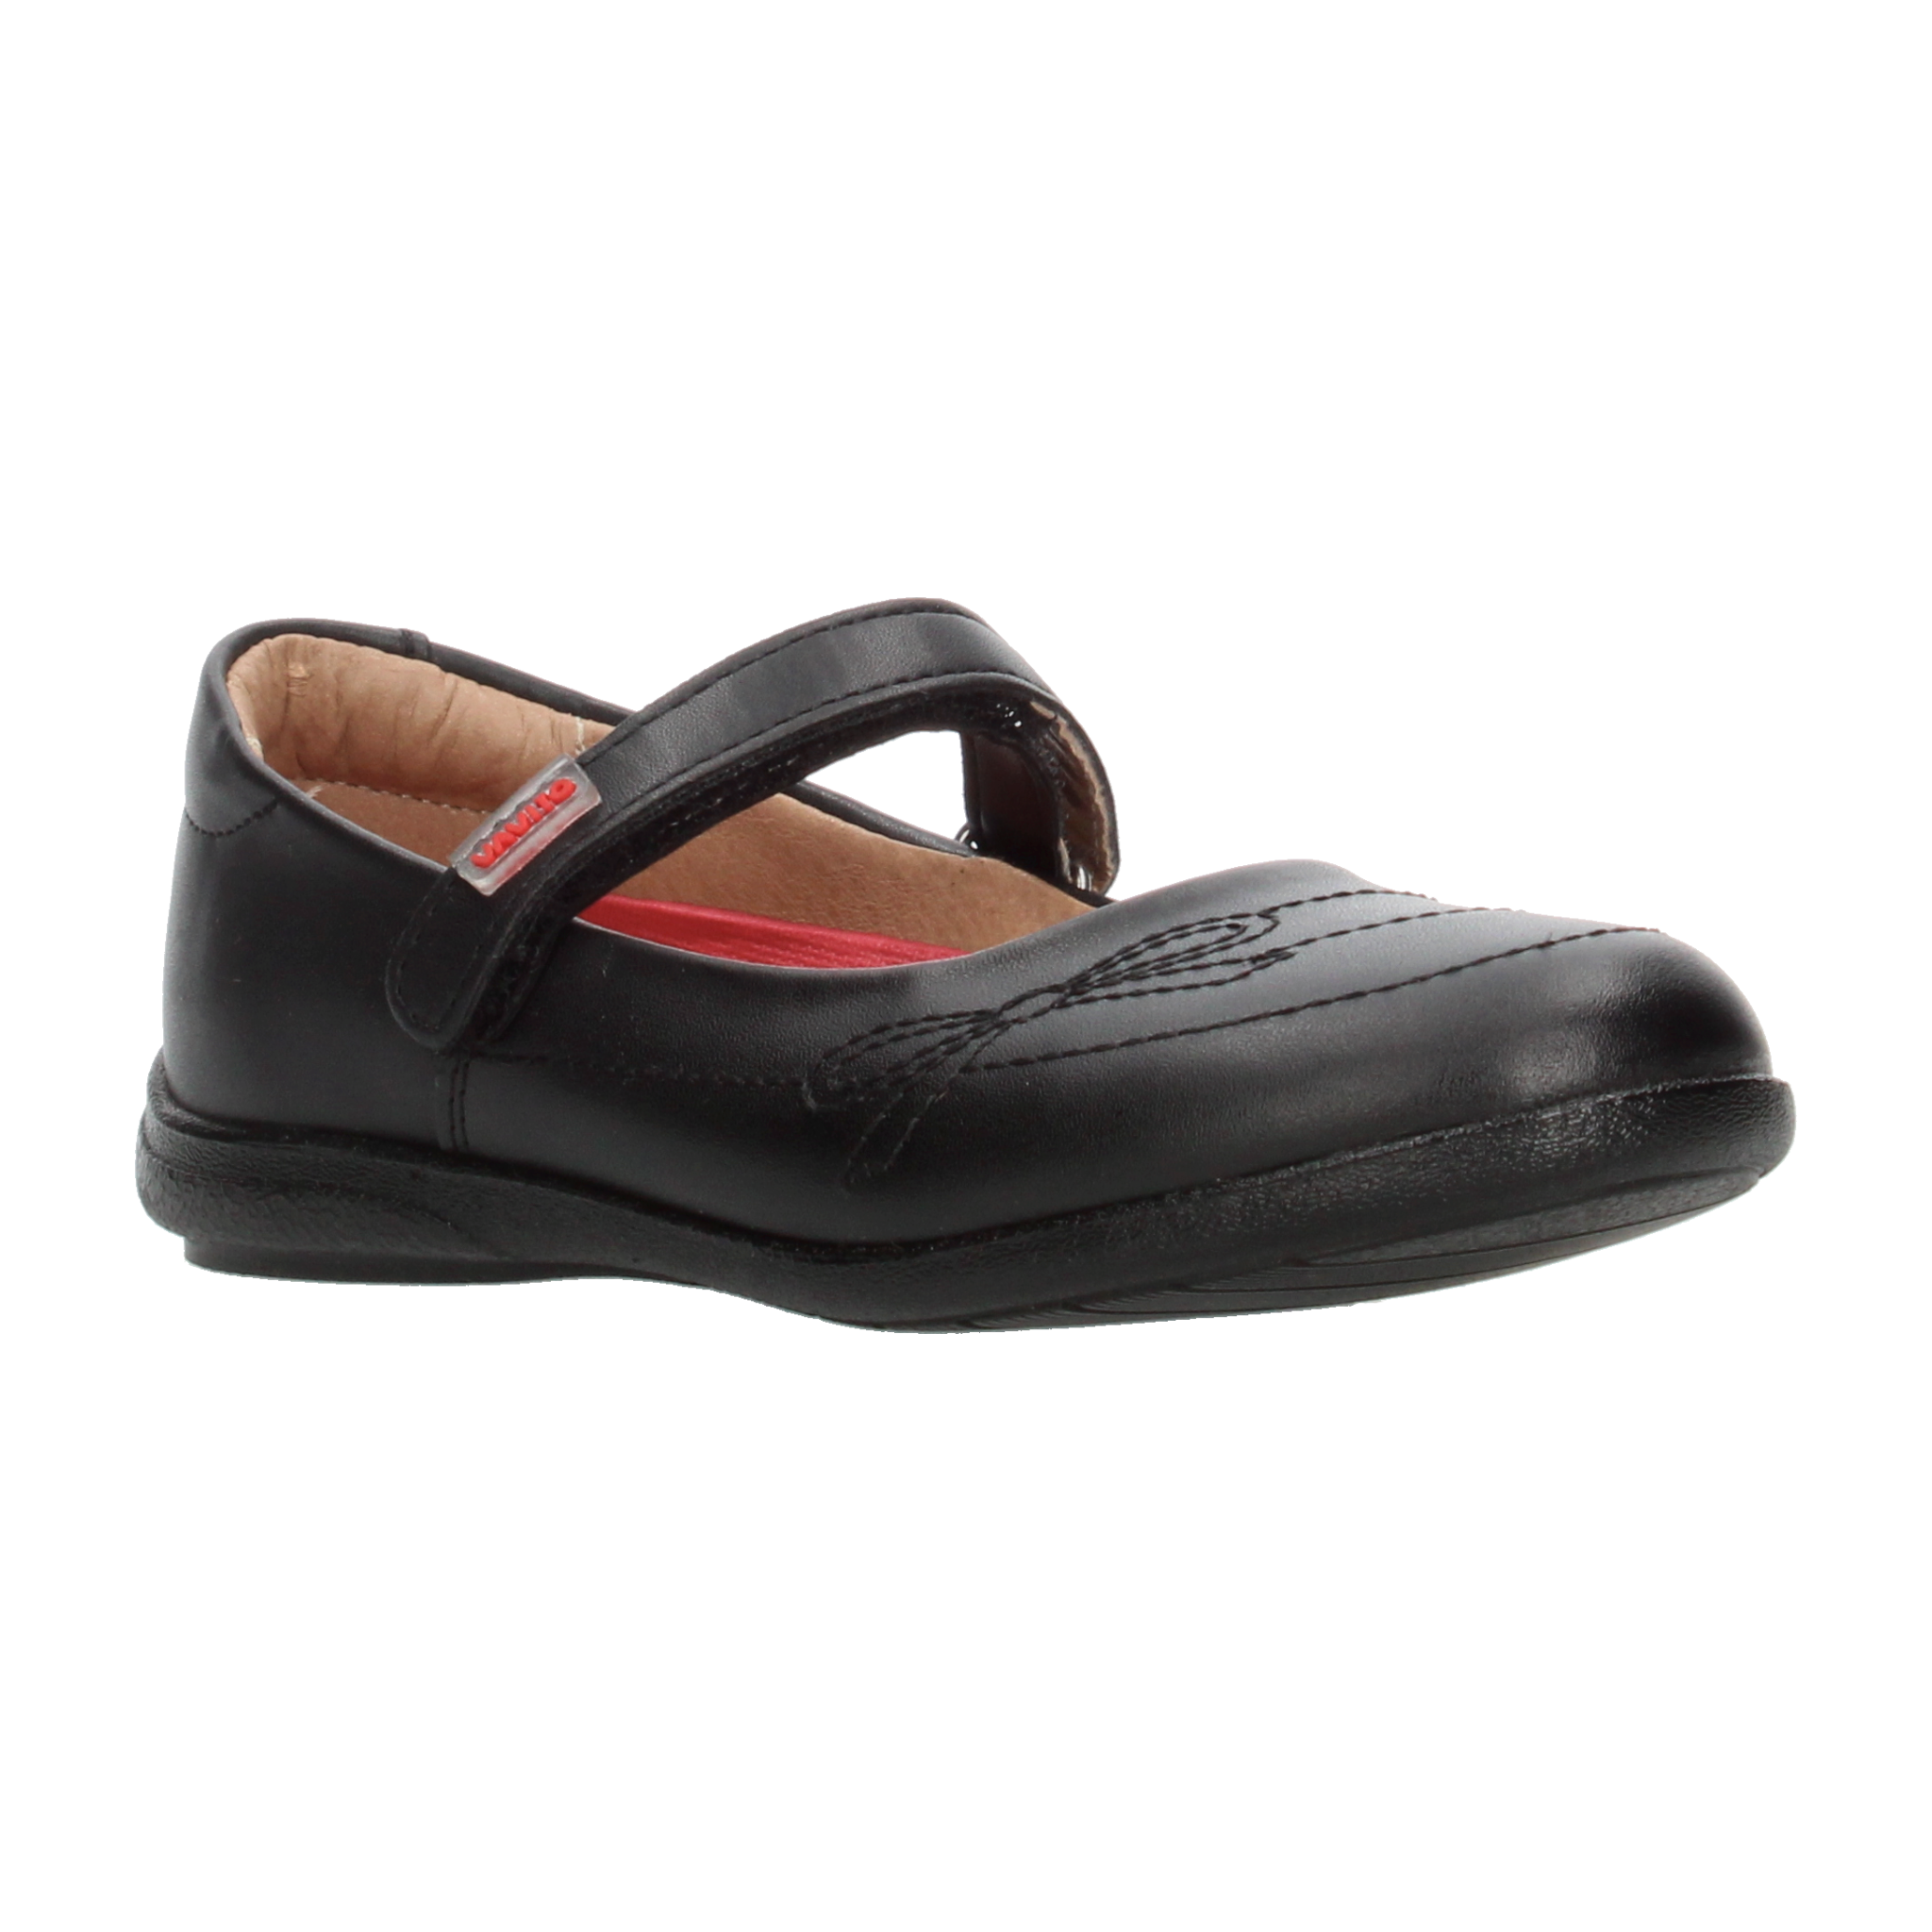 Zapato Escolar Vavito Negro para Niña [VVV1090] - Zapaterias Torreon